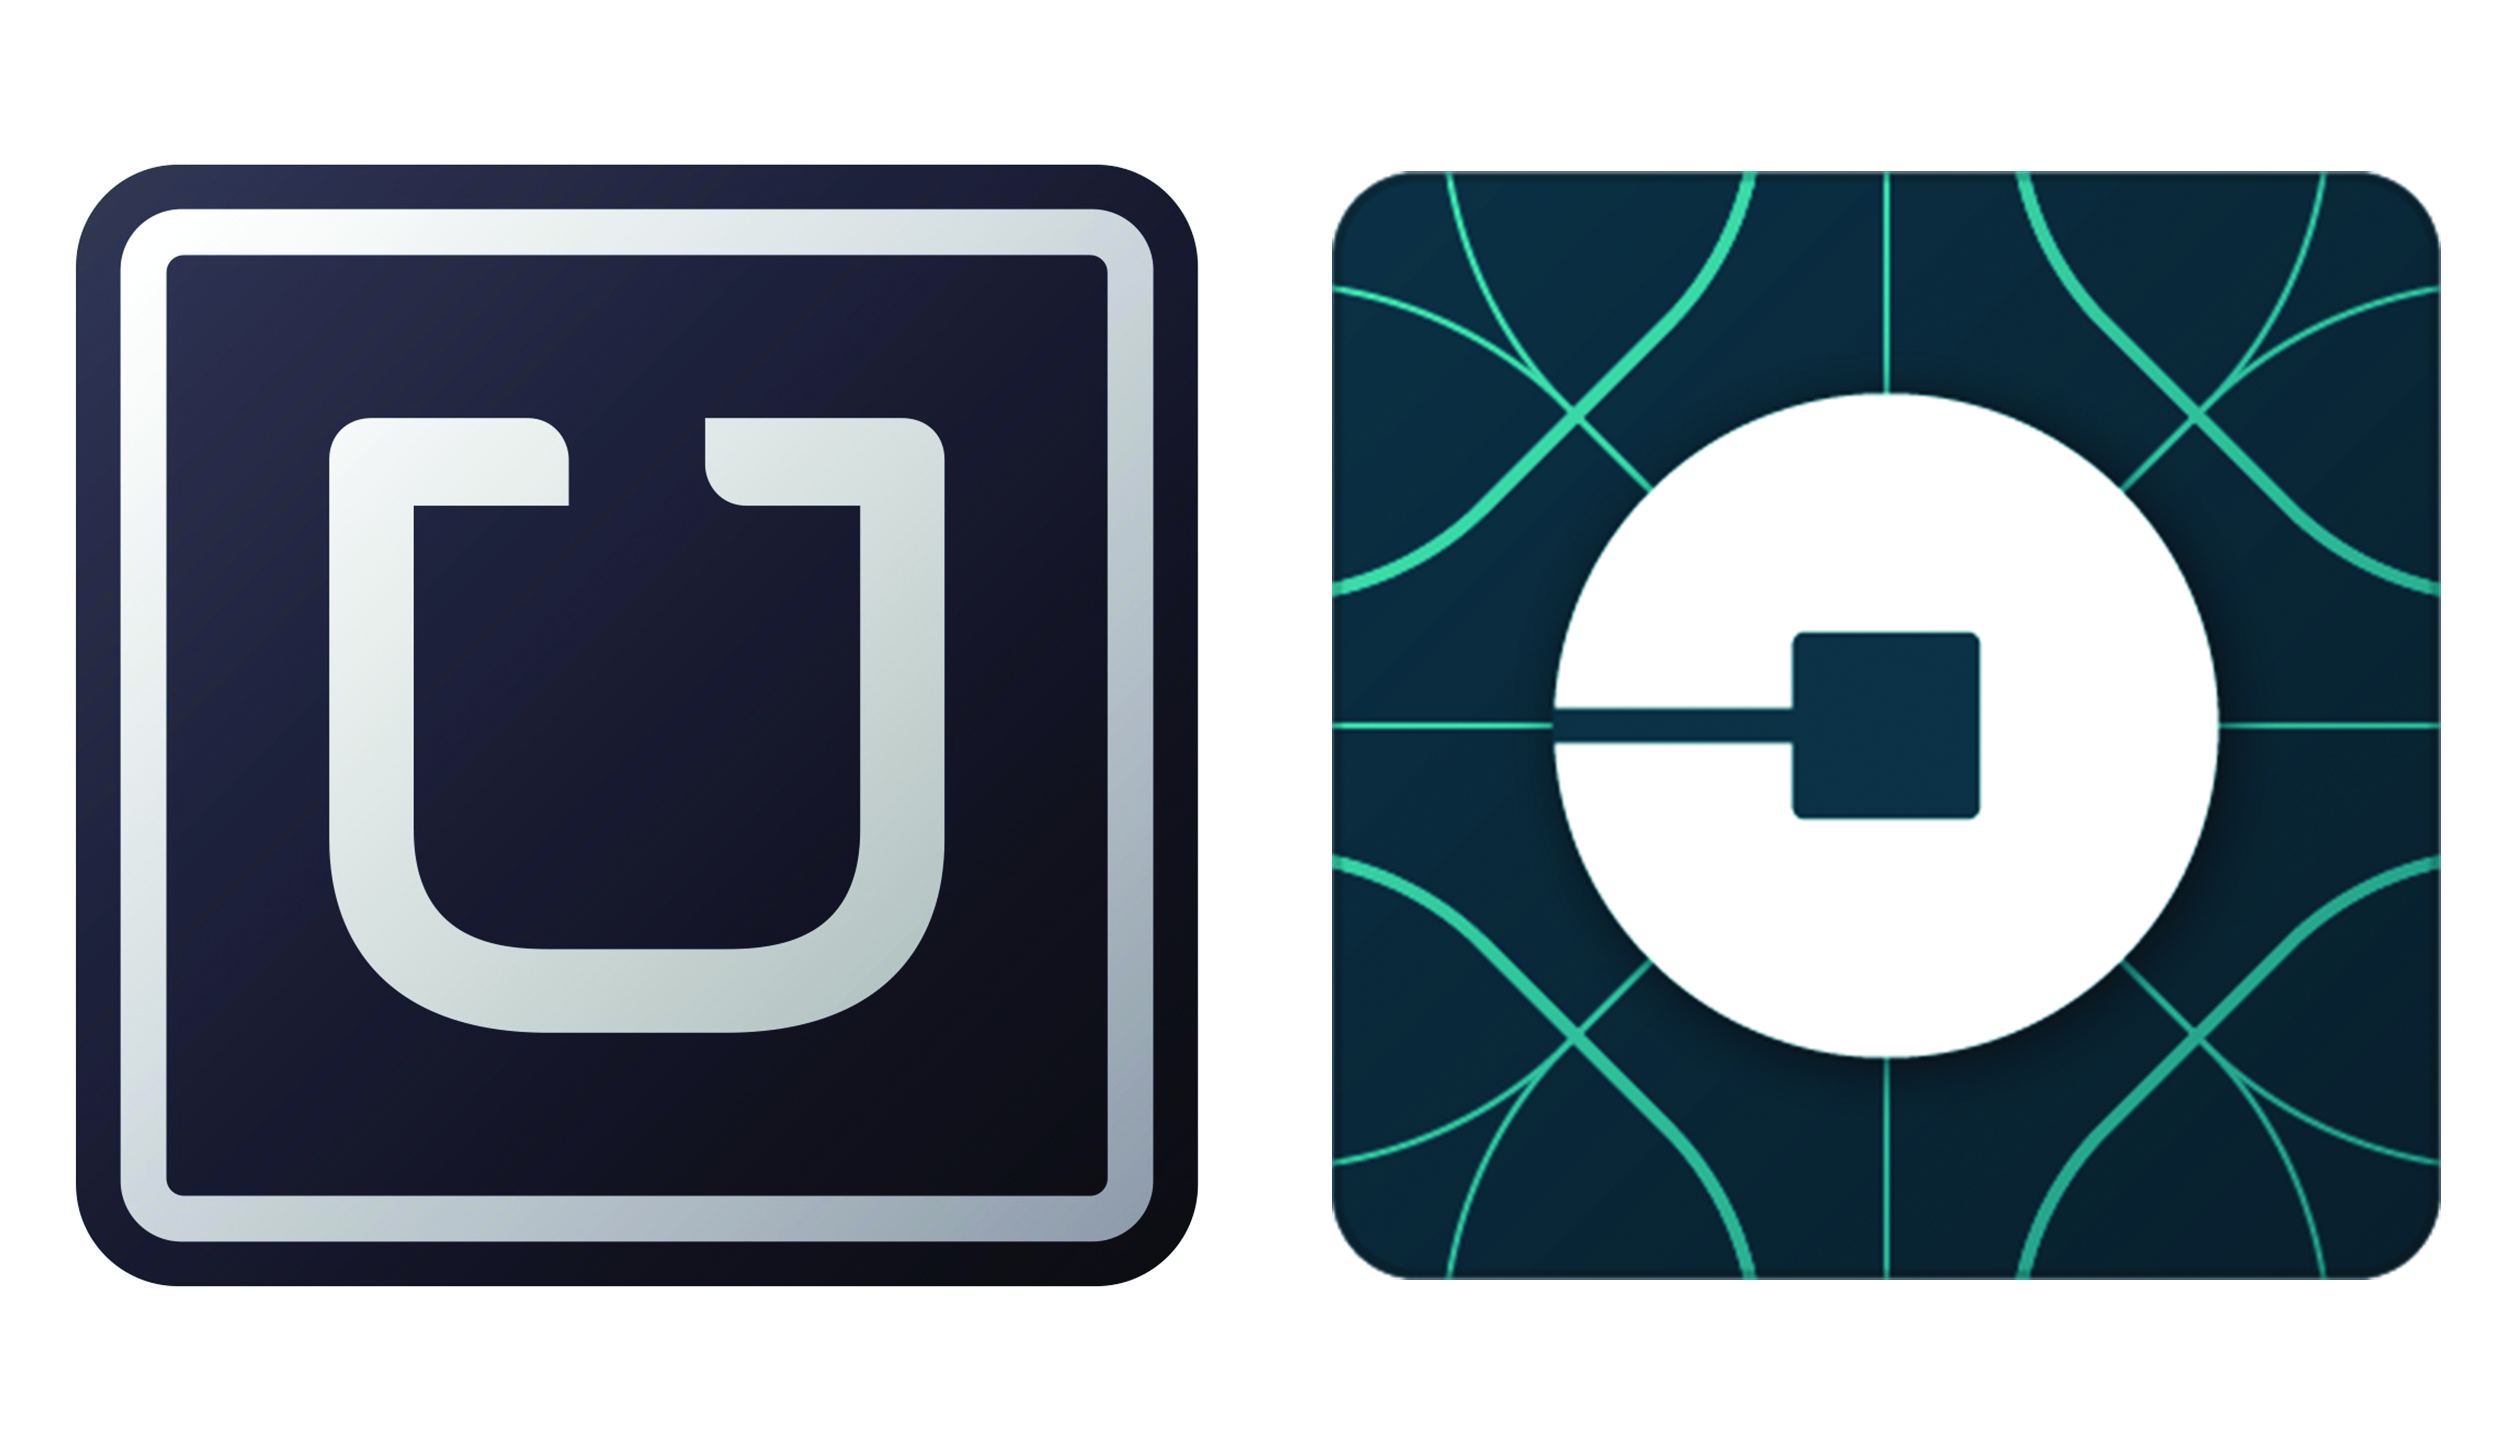 Uber sued over illegal backgr